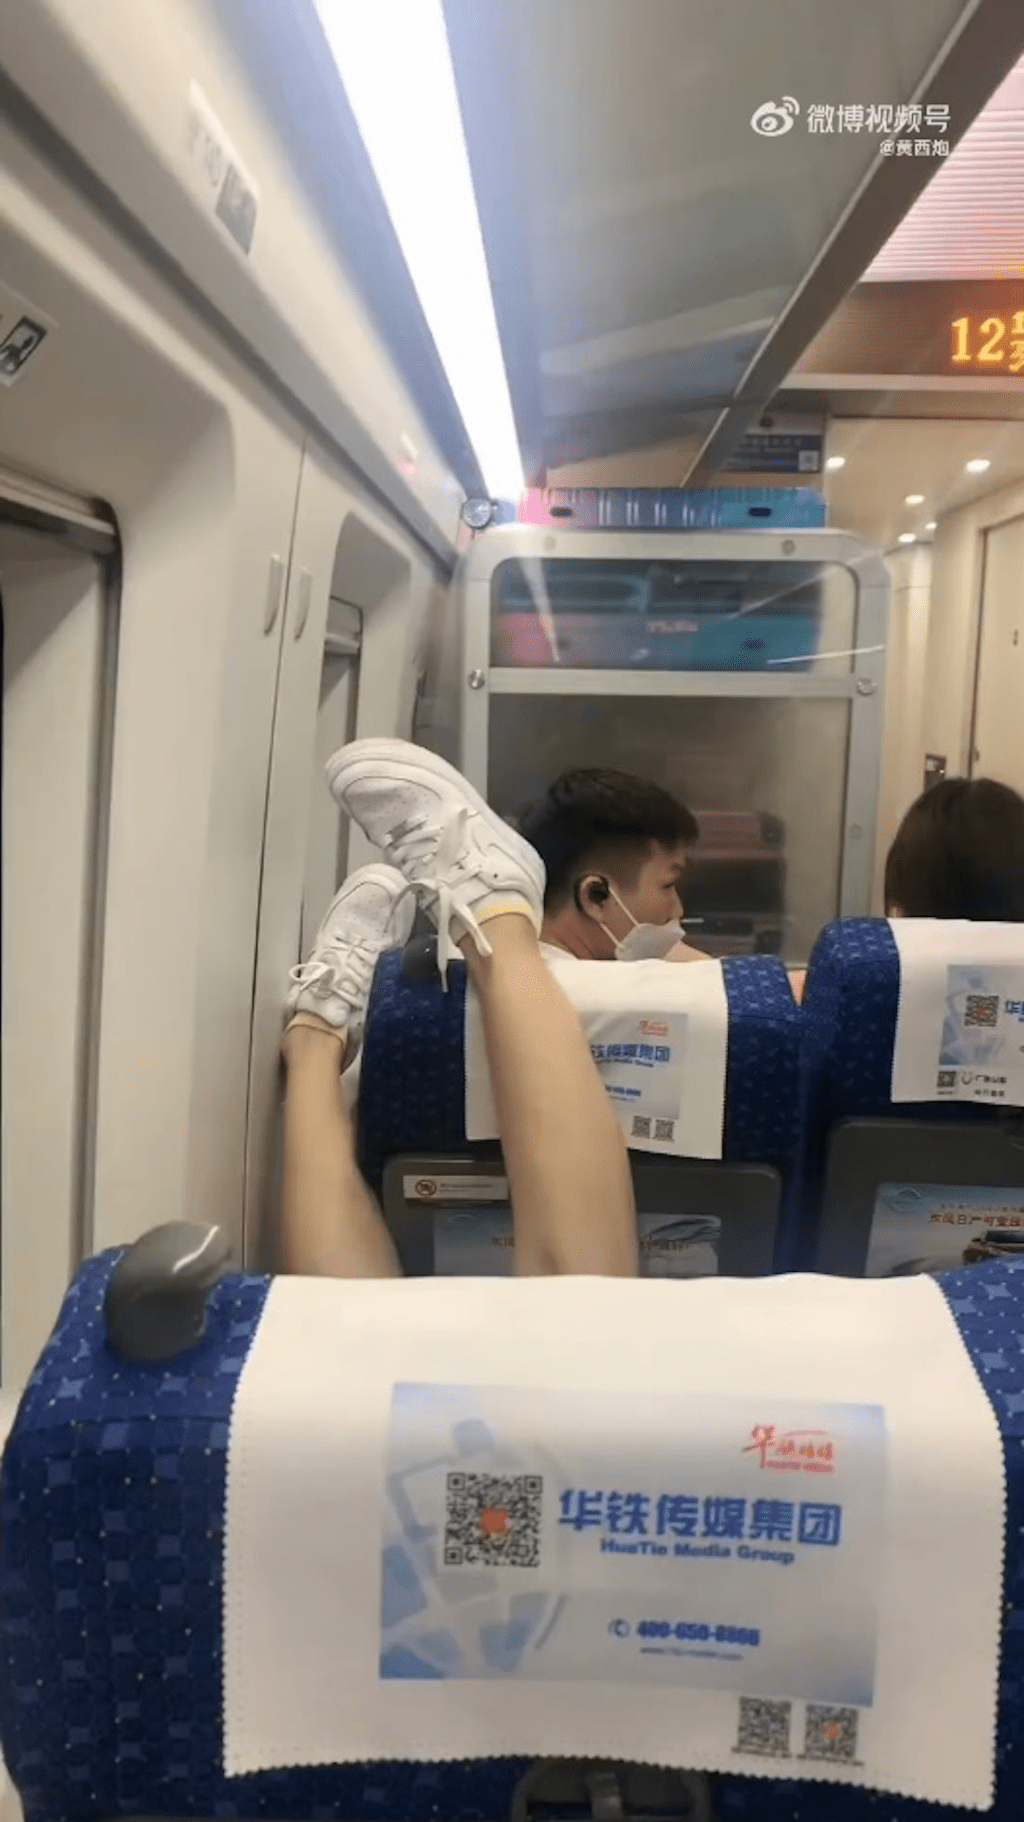 一名女子在高铁上将腿高高翘起，放在前排乘客头上，网上引发热议。